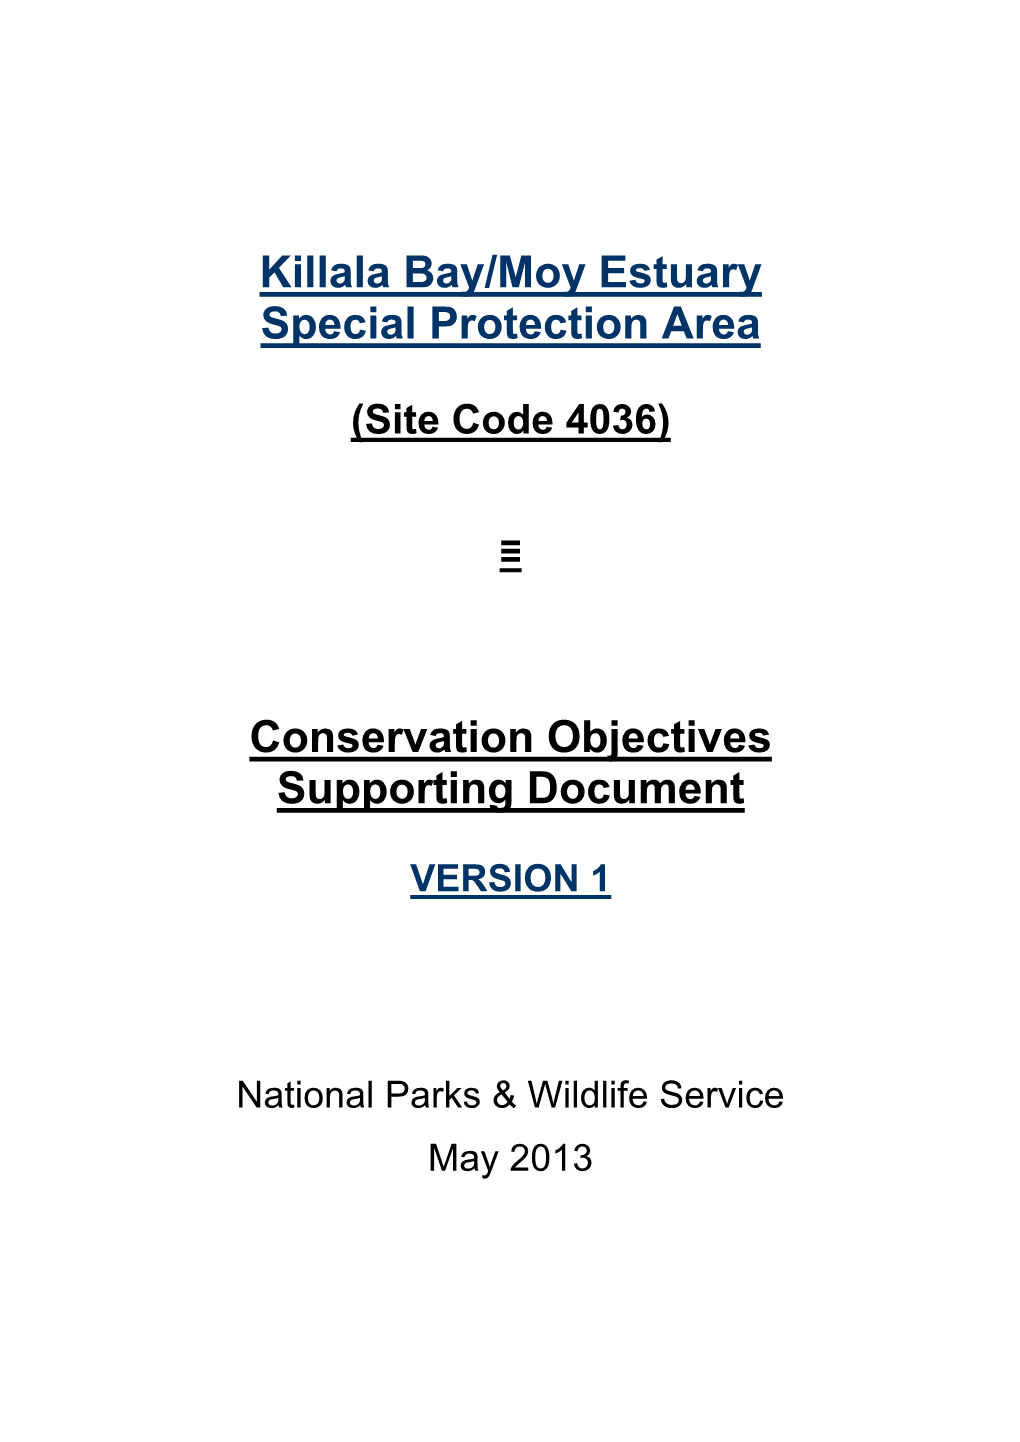 Killala Bay /Moy Estuary Special Protection Area